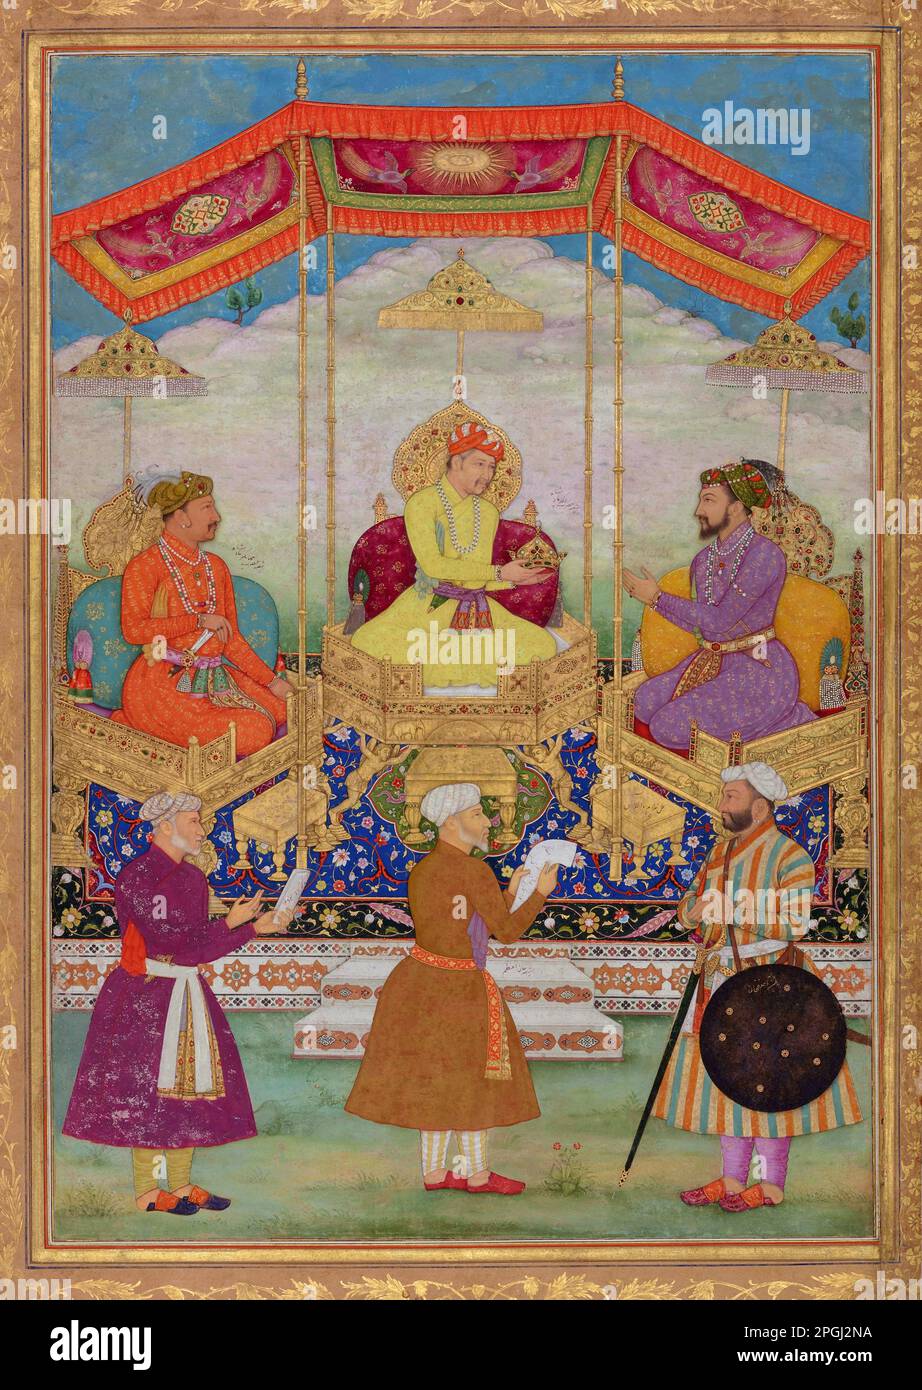 Indien: Akbar übergibt seine kaiserliche Krone an Shah Jahan. Miniaturmalerei aus dem Minto Album von Bichitr (Reihe 1610-1660), c. 1630-1631. Akbar (25. Oktober 1542 bis 27. Oktober 1605), auch bekannt als Shahanshah Akbar-e-Azam oder Akbar der große, war der dritte Mogul-Kaiser. Er war von timuridem Abstammung; der Sohn von Kaiser Humayun und der Enkel von Kaiser Babur, dem Herrscher, der die Mogul-Dynastie in Indien gründete. Am Ende seiner Herrschaft im Jahr 1605 erstreckte sich das Mogul-Reich über den größten Teil des nördlichen und mittleren Indiens. Akbar war 13 Jahre alt, als er den Mogul-Thron in Delhi bestieg (Februar 1556). Stockfoto